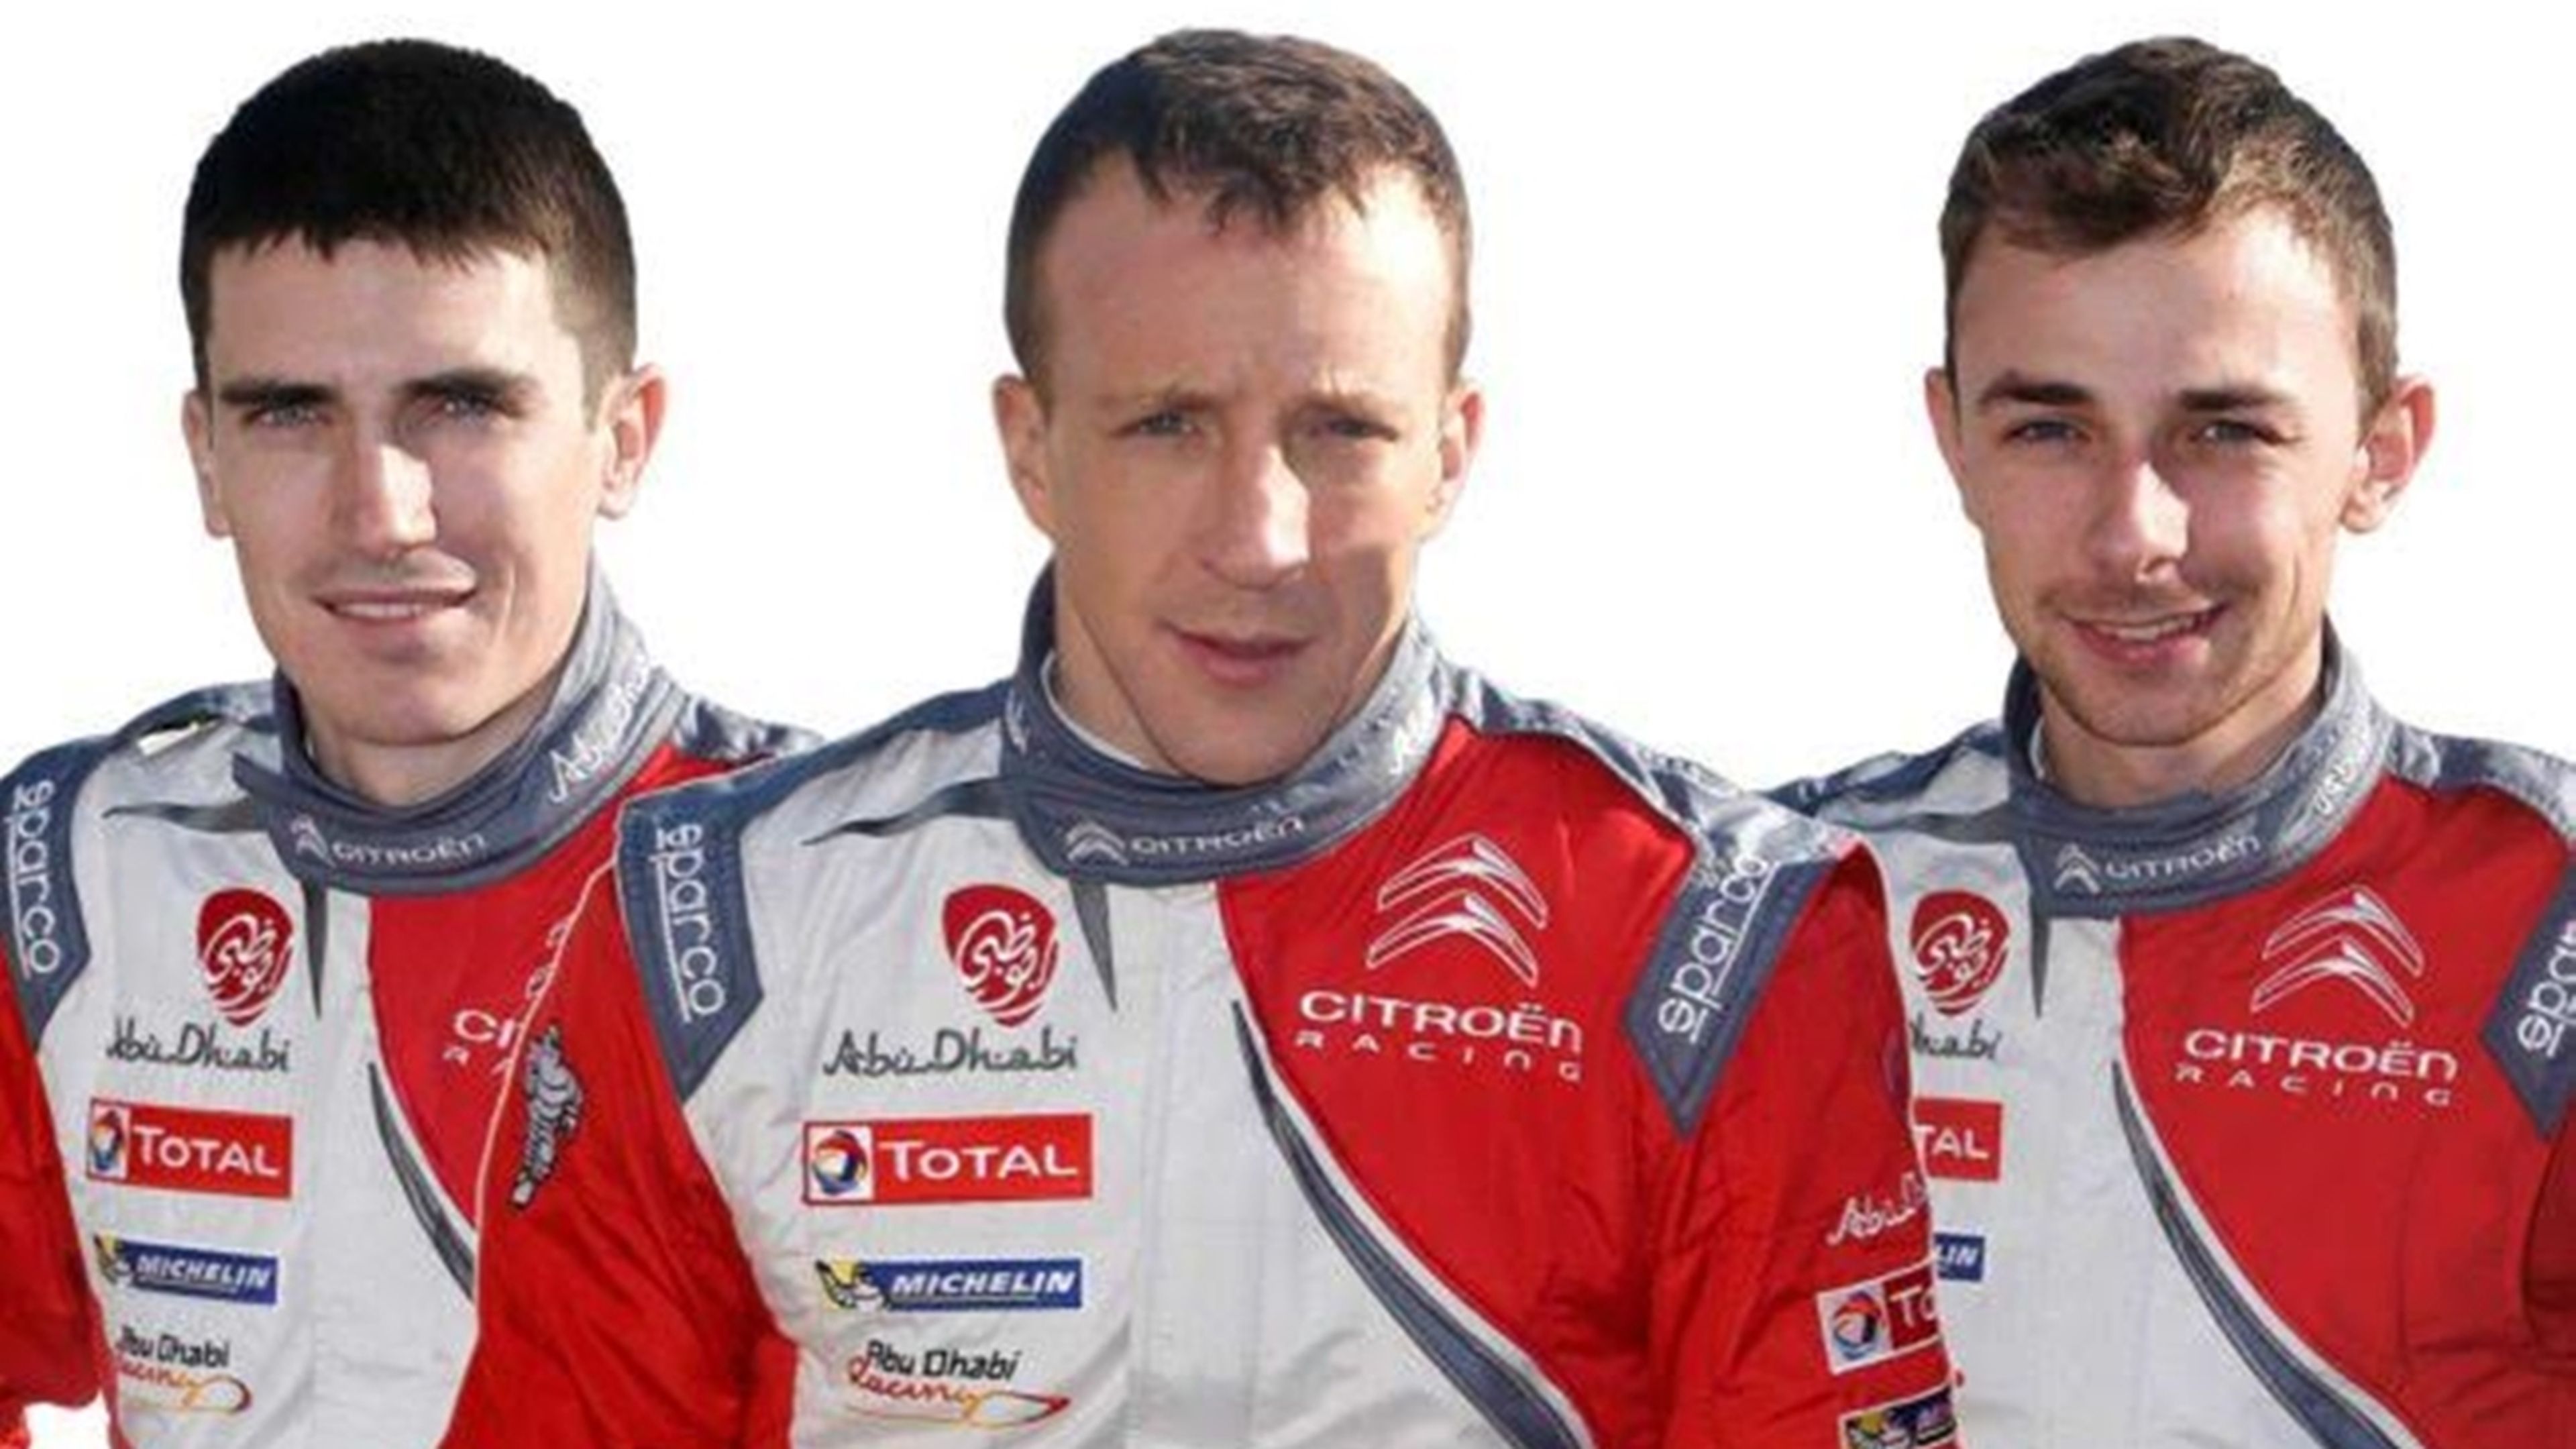 Citroën confirma su alineación de pilotos para el WRC 2017